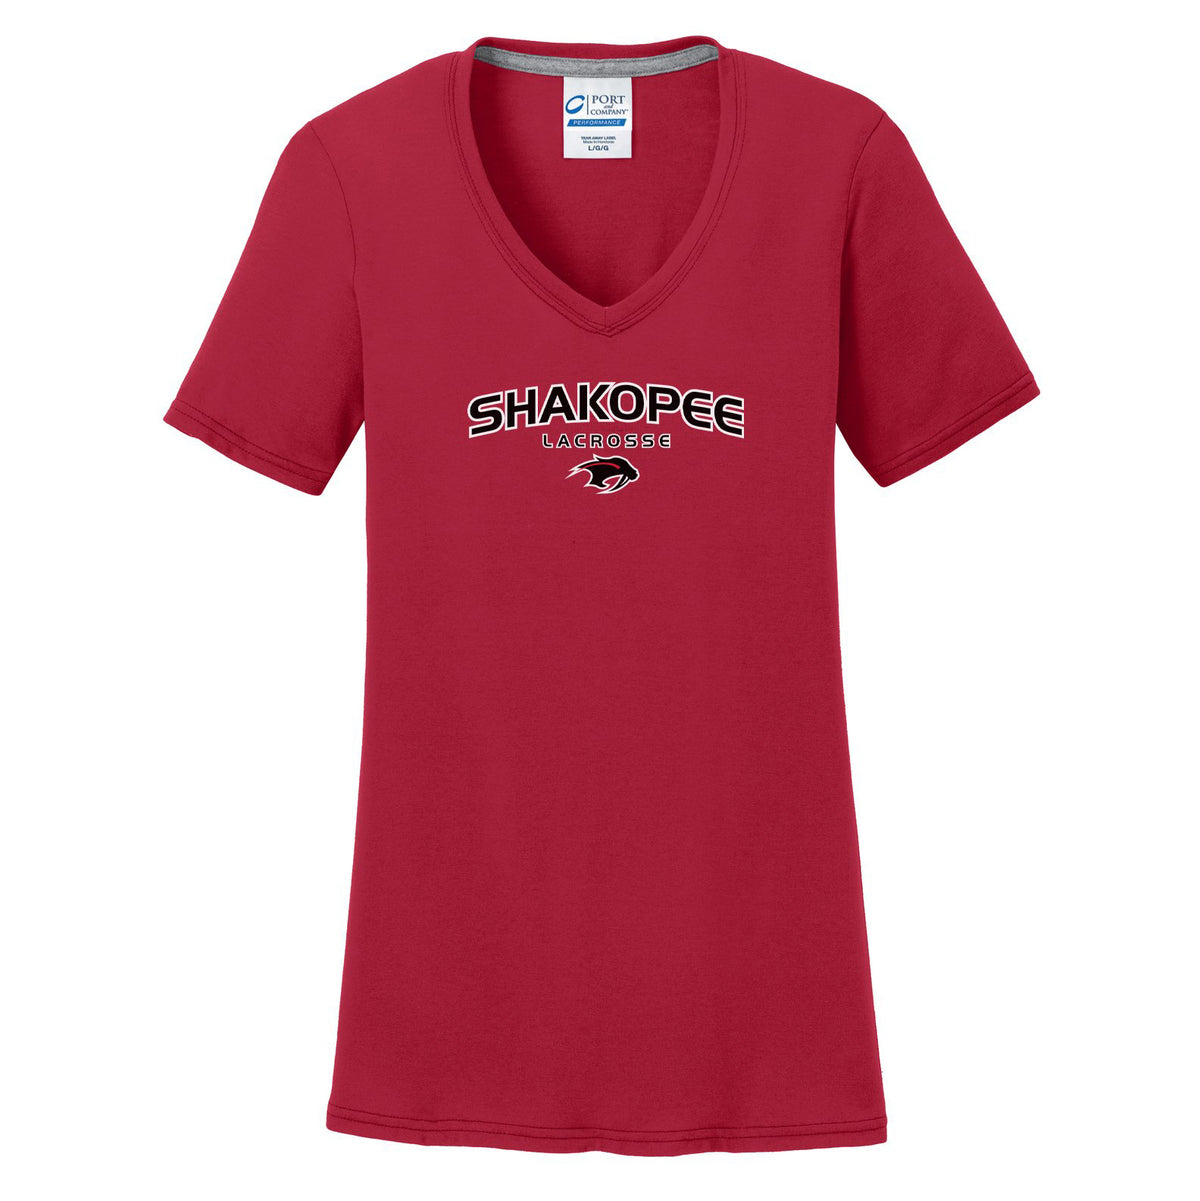 Shakopee Lacrosse Women's T-Shirt